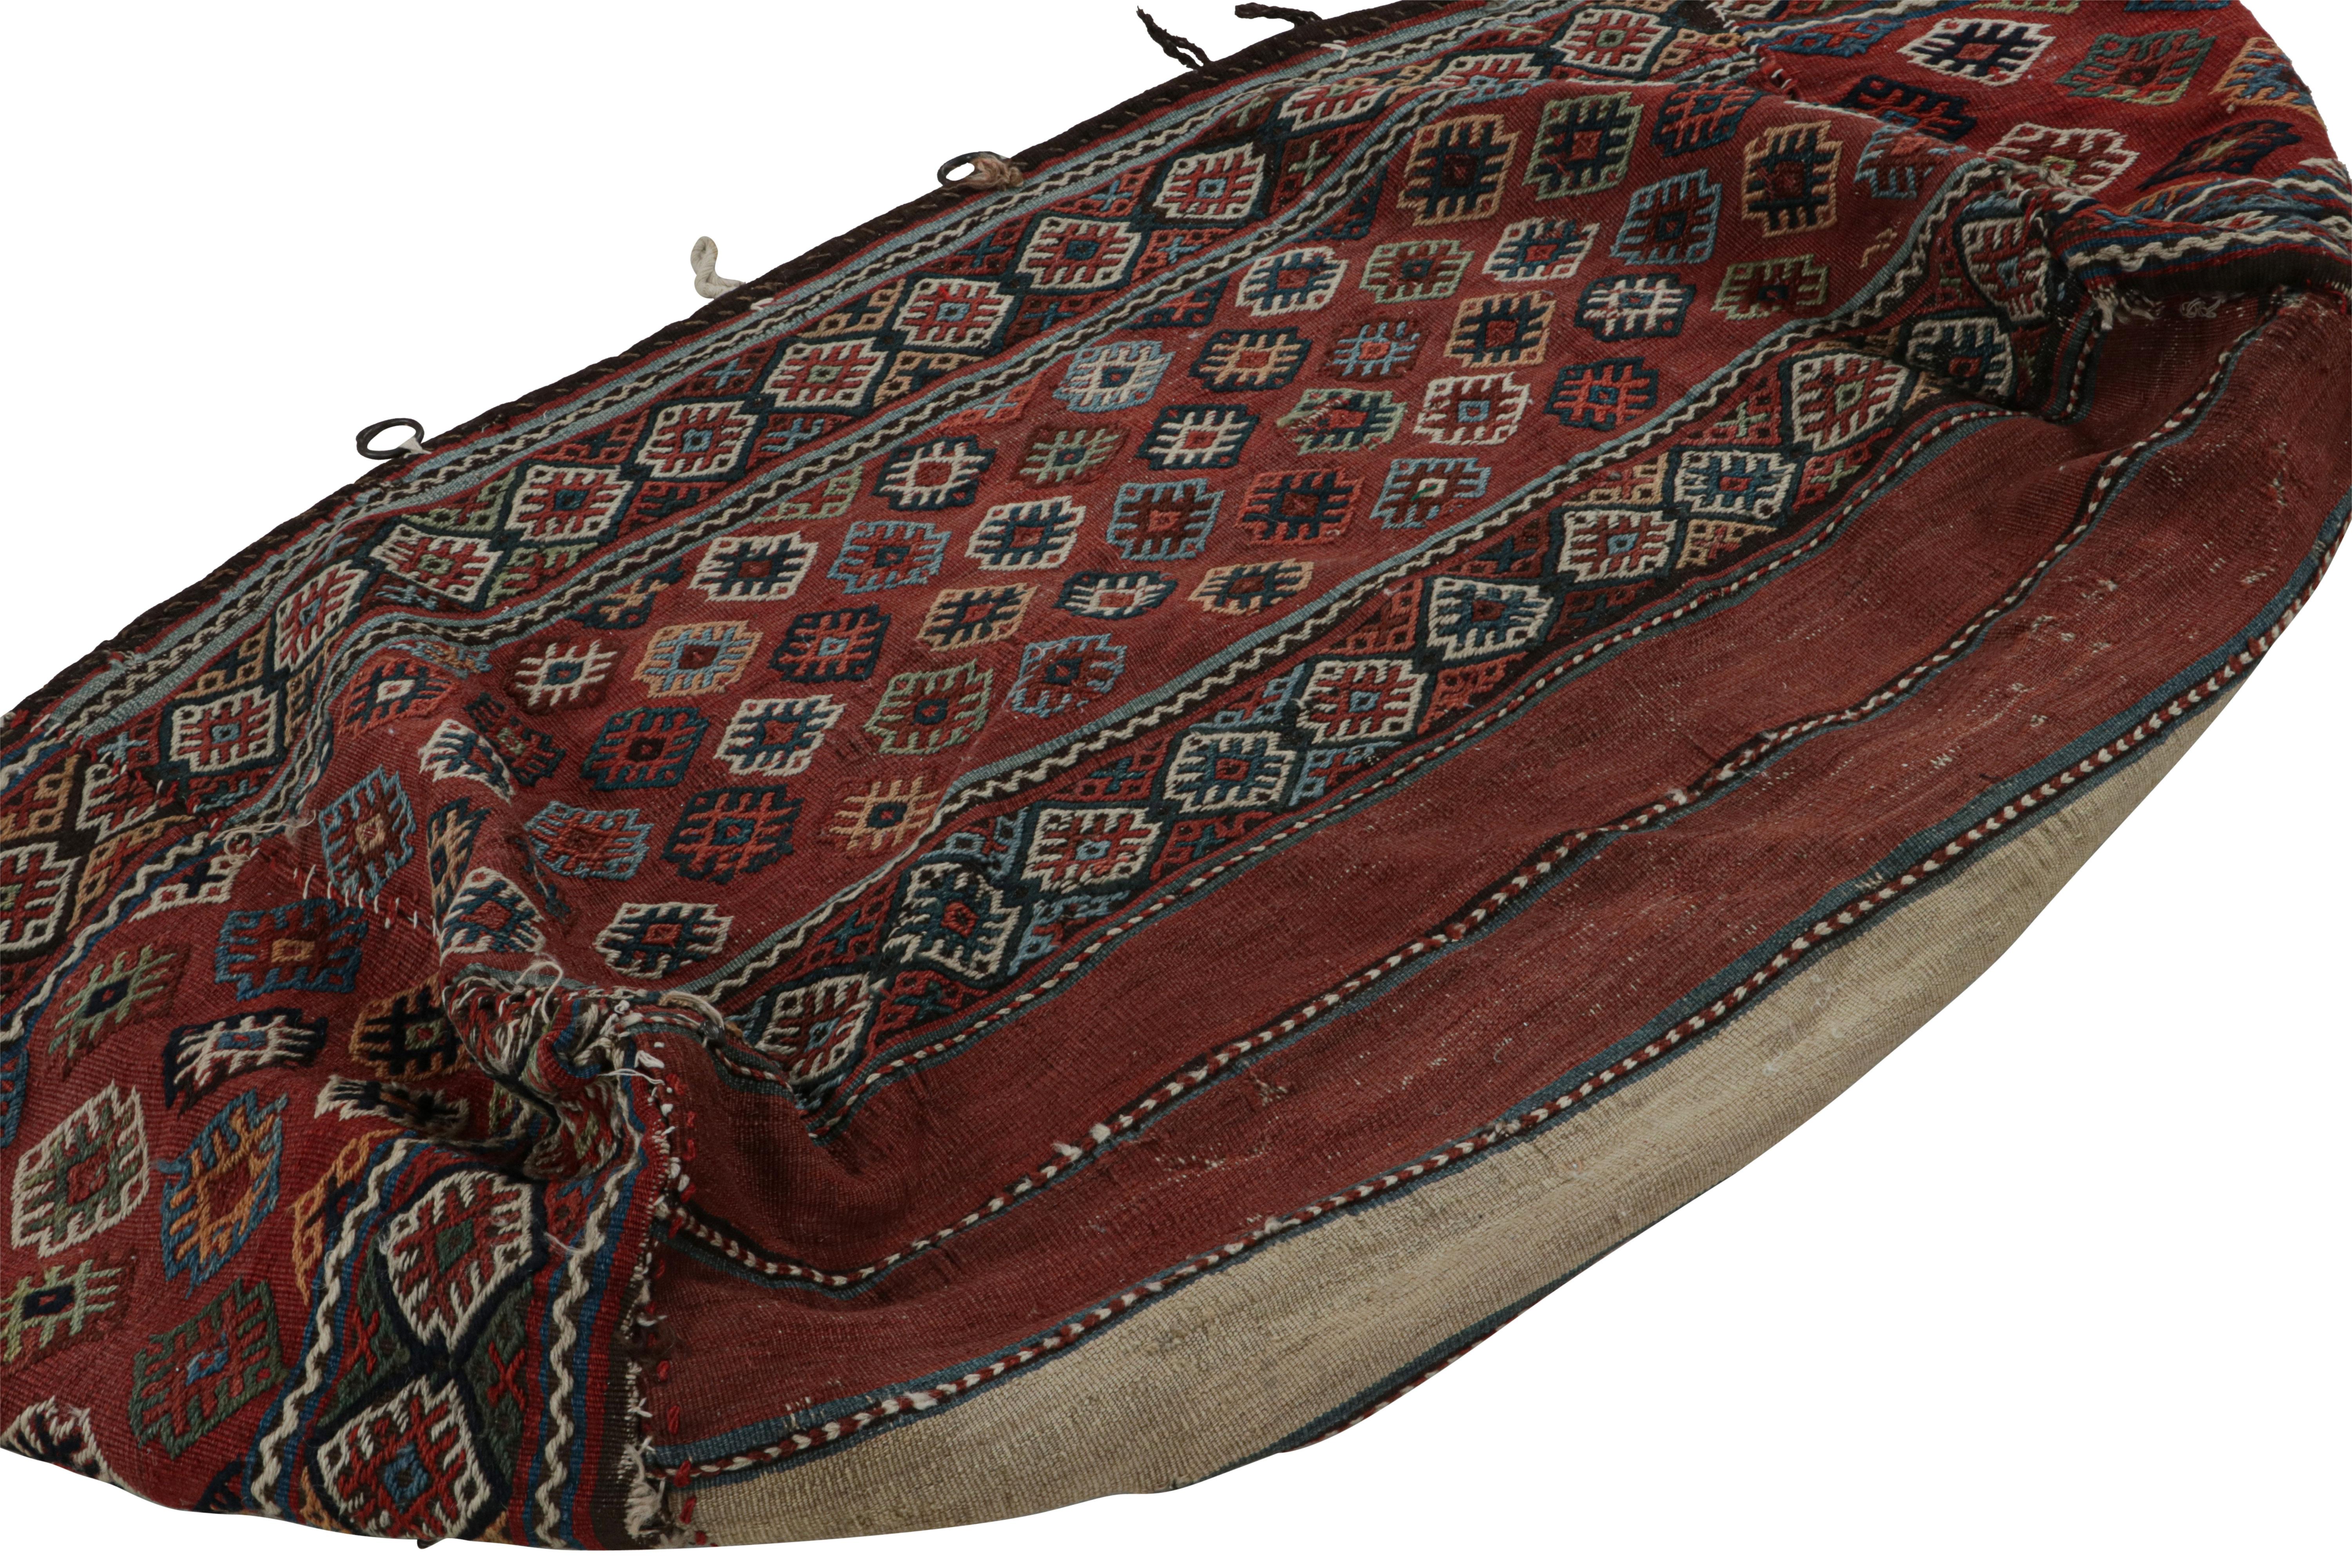 Dieses handgewebte Flachgewebe aus Wolle aus der Türkei (ca. 1920-1930) ist eine Tasche von 2x5 cm, die einst im täglichen Leben von Stammes- und Nomadenvölkern verwendet wurde.

Über das Design: 

Dieses archaische Kunstwerk mit althergebrachtem